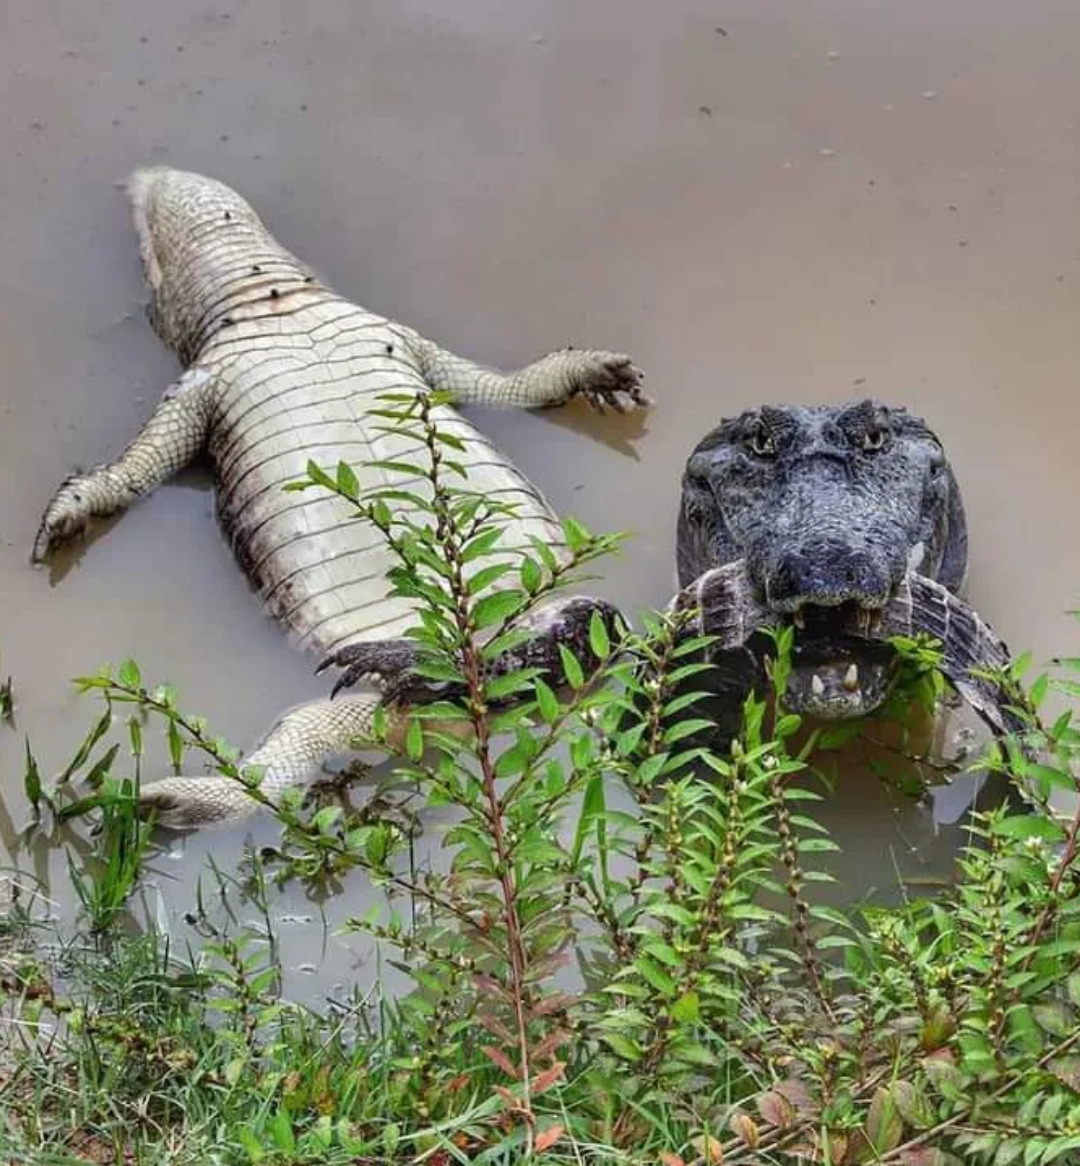 Ce crocodile